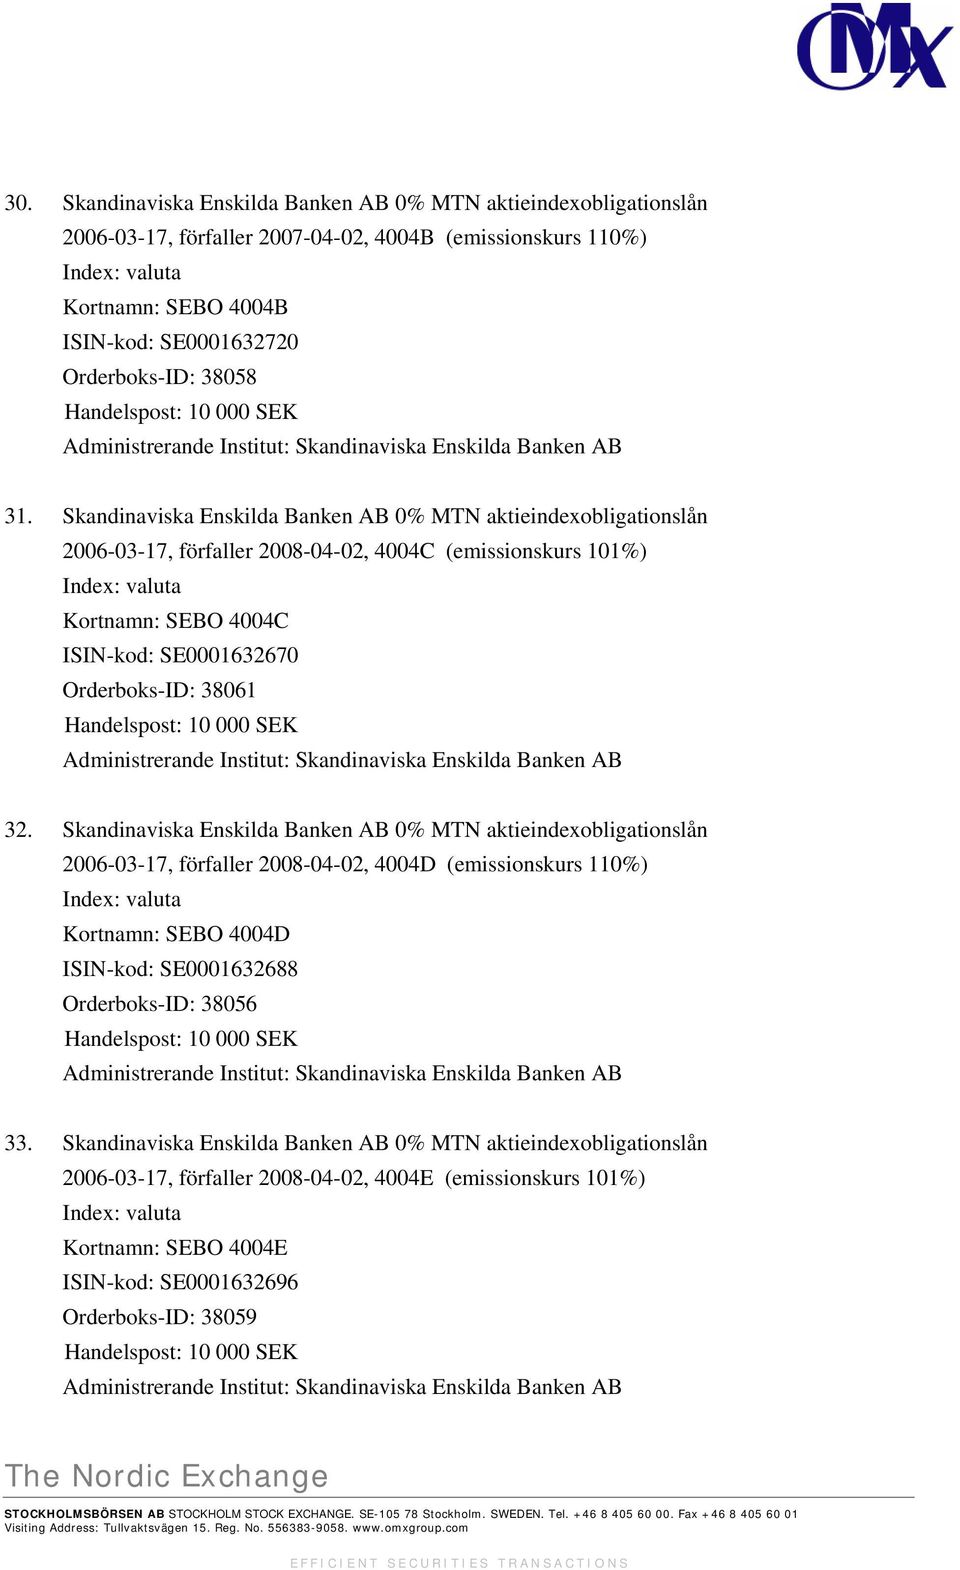 Skandinaviska Enskilda Banken AB 0% MTN aktieindexobligationslån 2006-03-17, förfaller 2008-04-02, 4004C (emissionskurs 101%) Index: valuta Kortnamn: SEBO 4004C ISIN-kod: SE0001632670 Orderboks-ID: